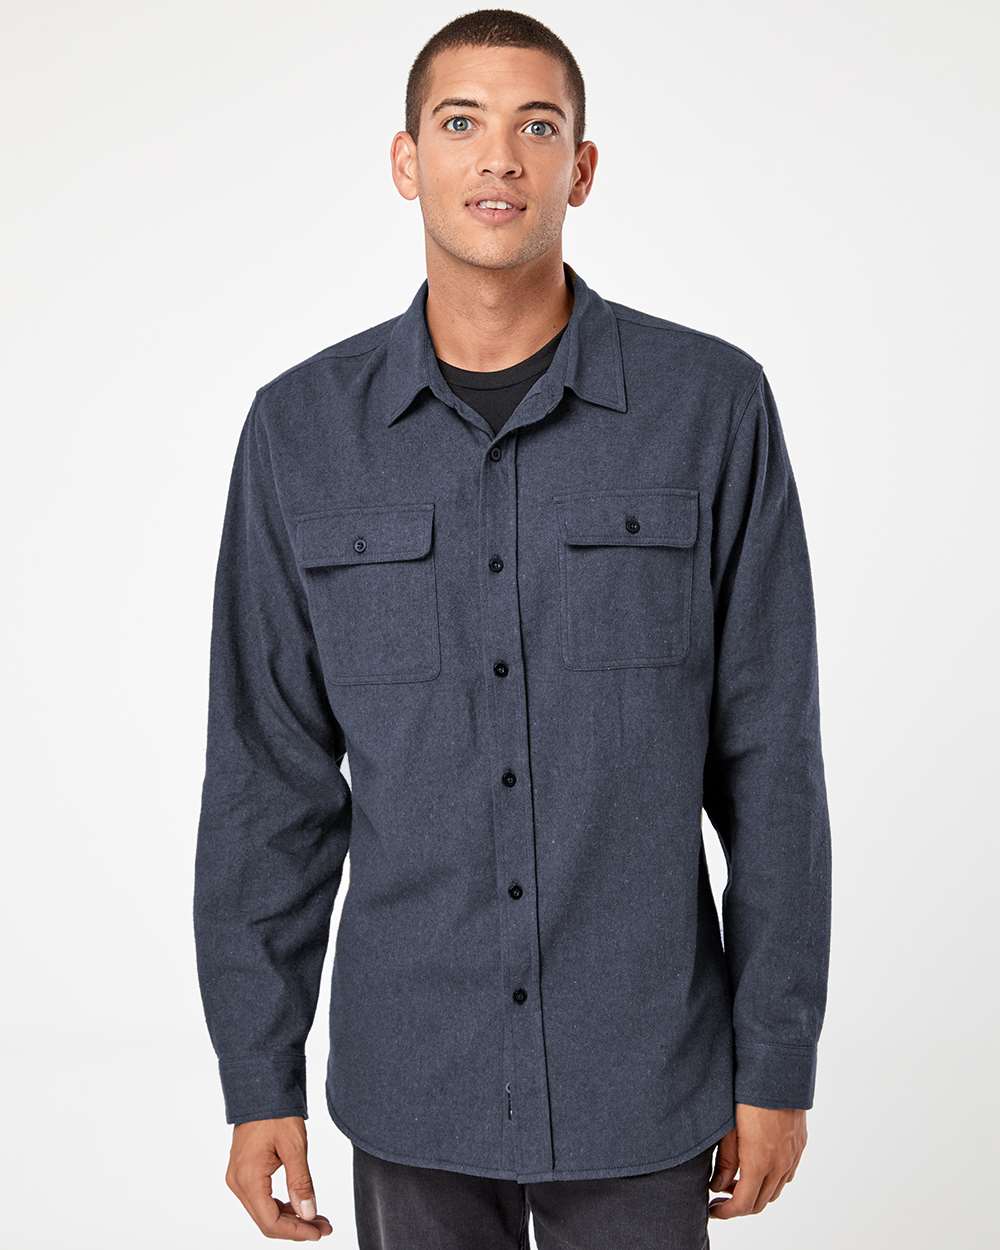 Burnside Solid Long Sleeve Flannel Shirt 8200 #colormdl_Denim